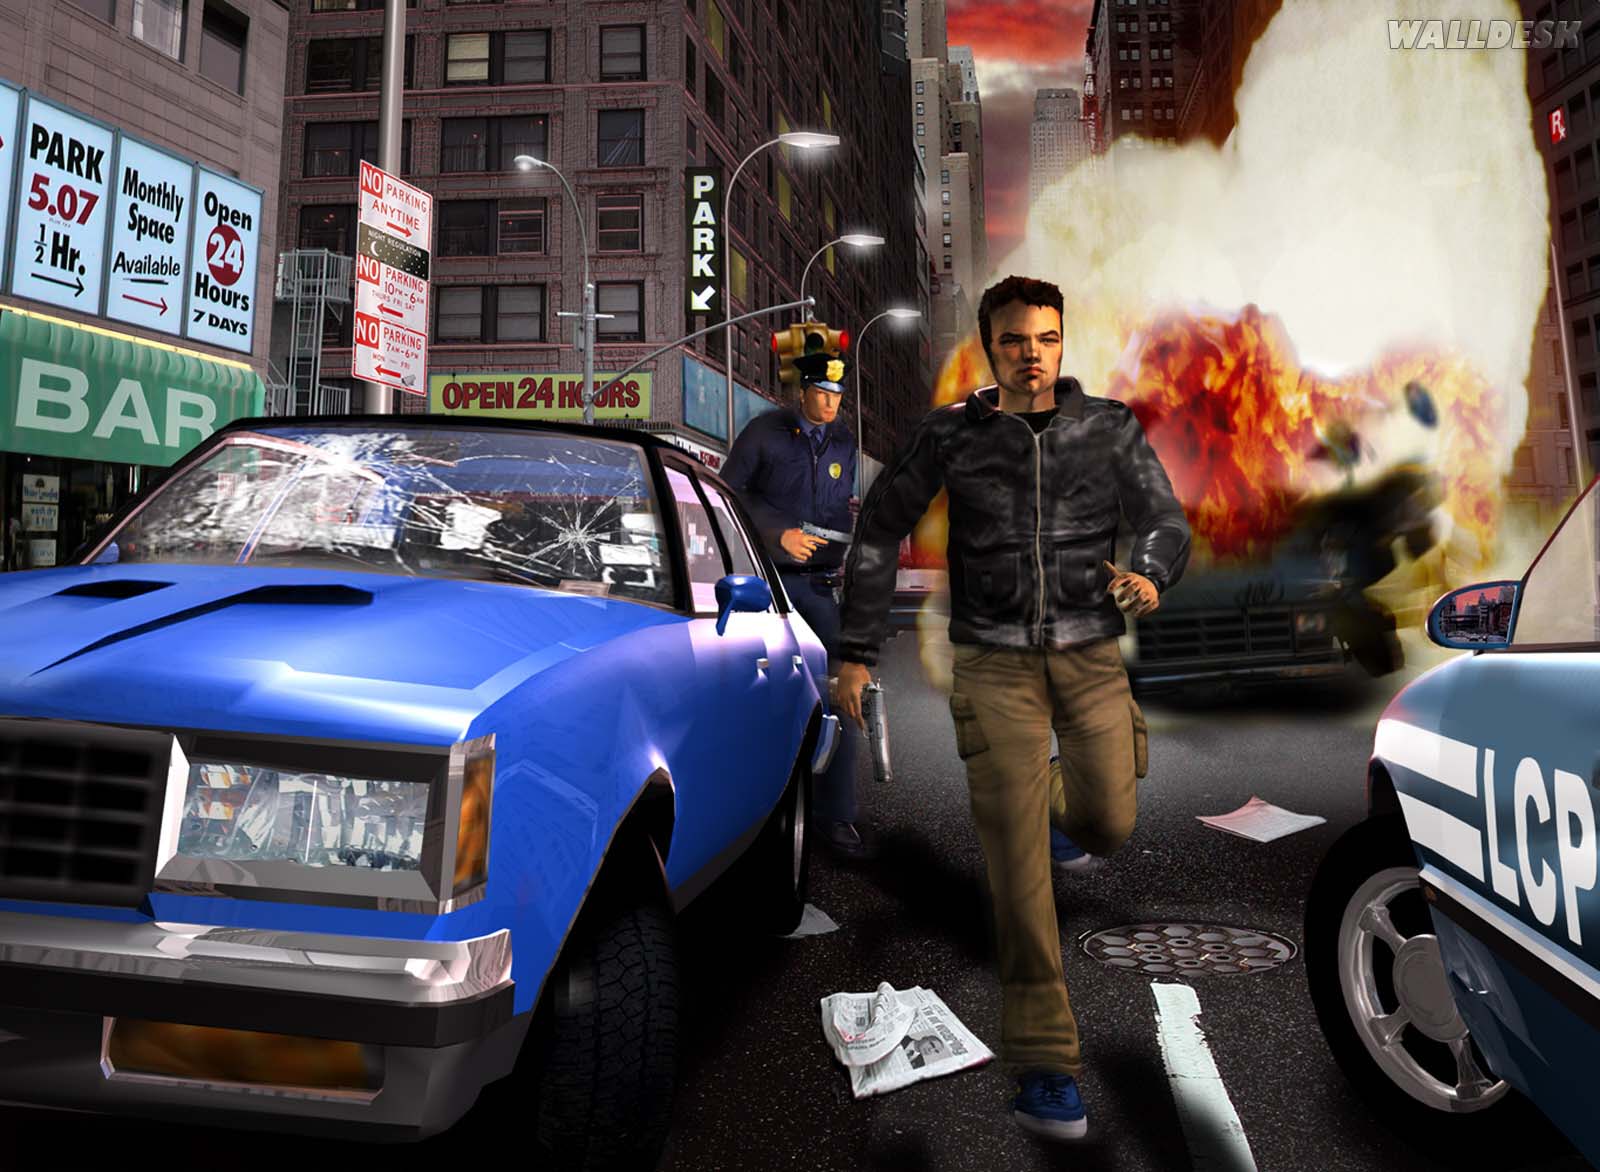 Grand Theft Auto Games Fotos Imagens E Wallpaper No Walldesk